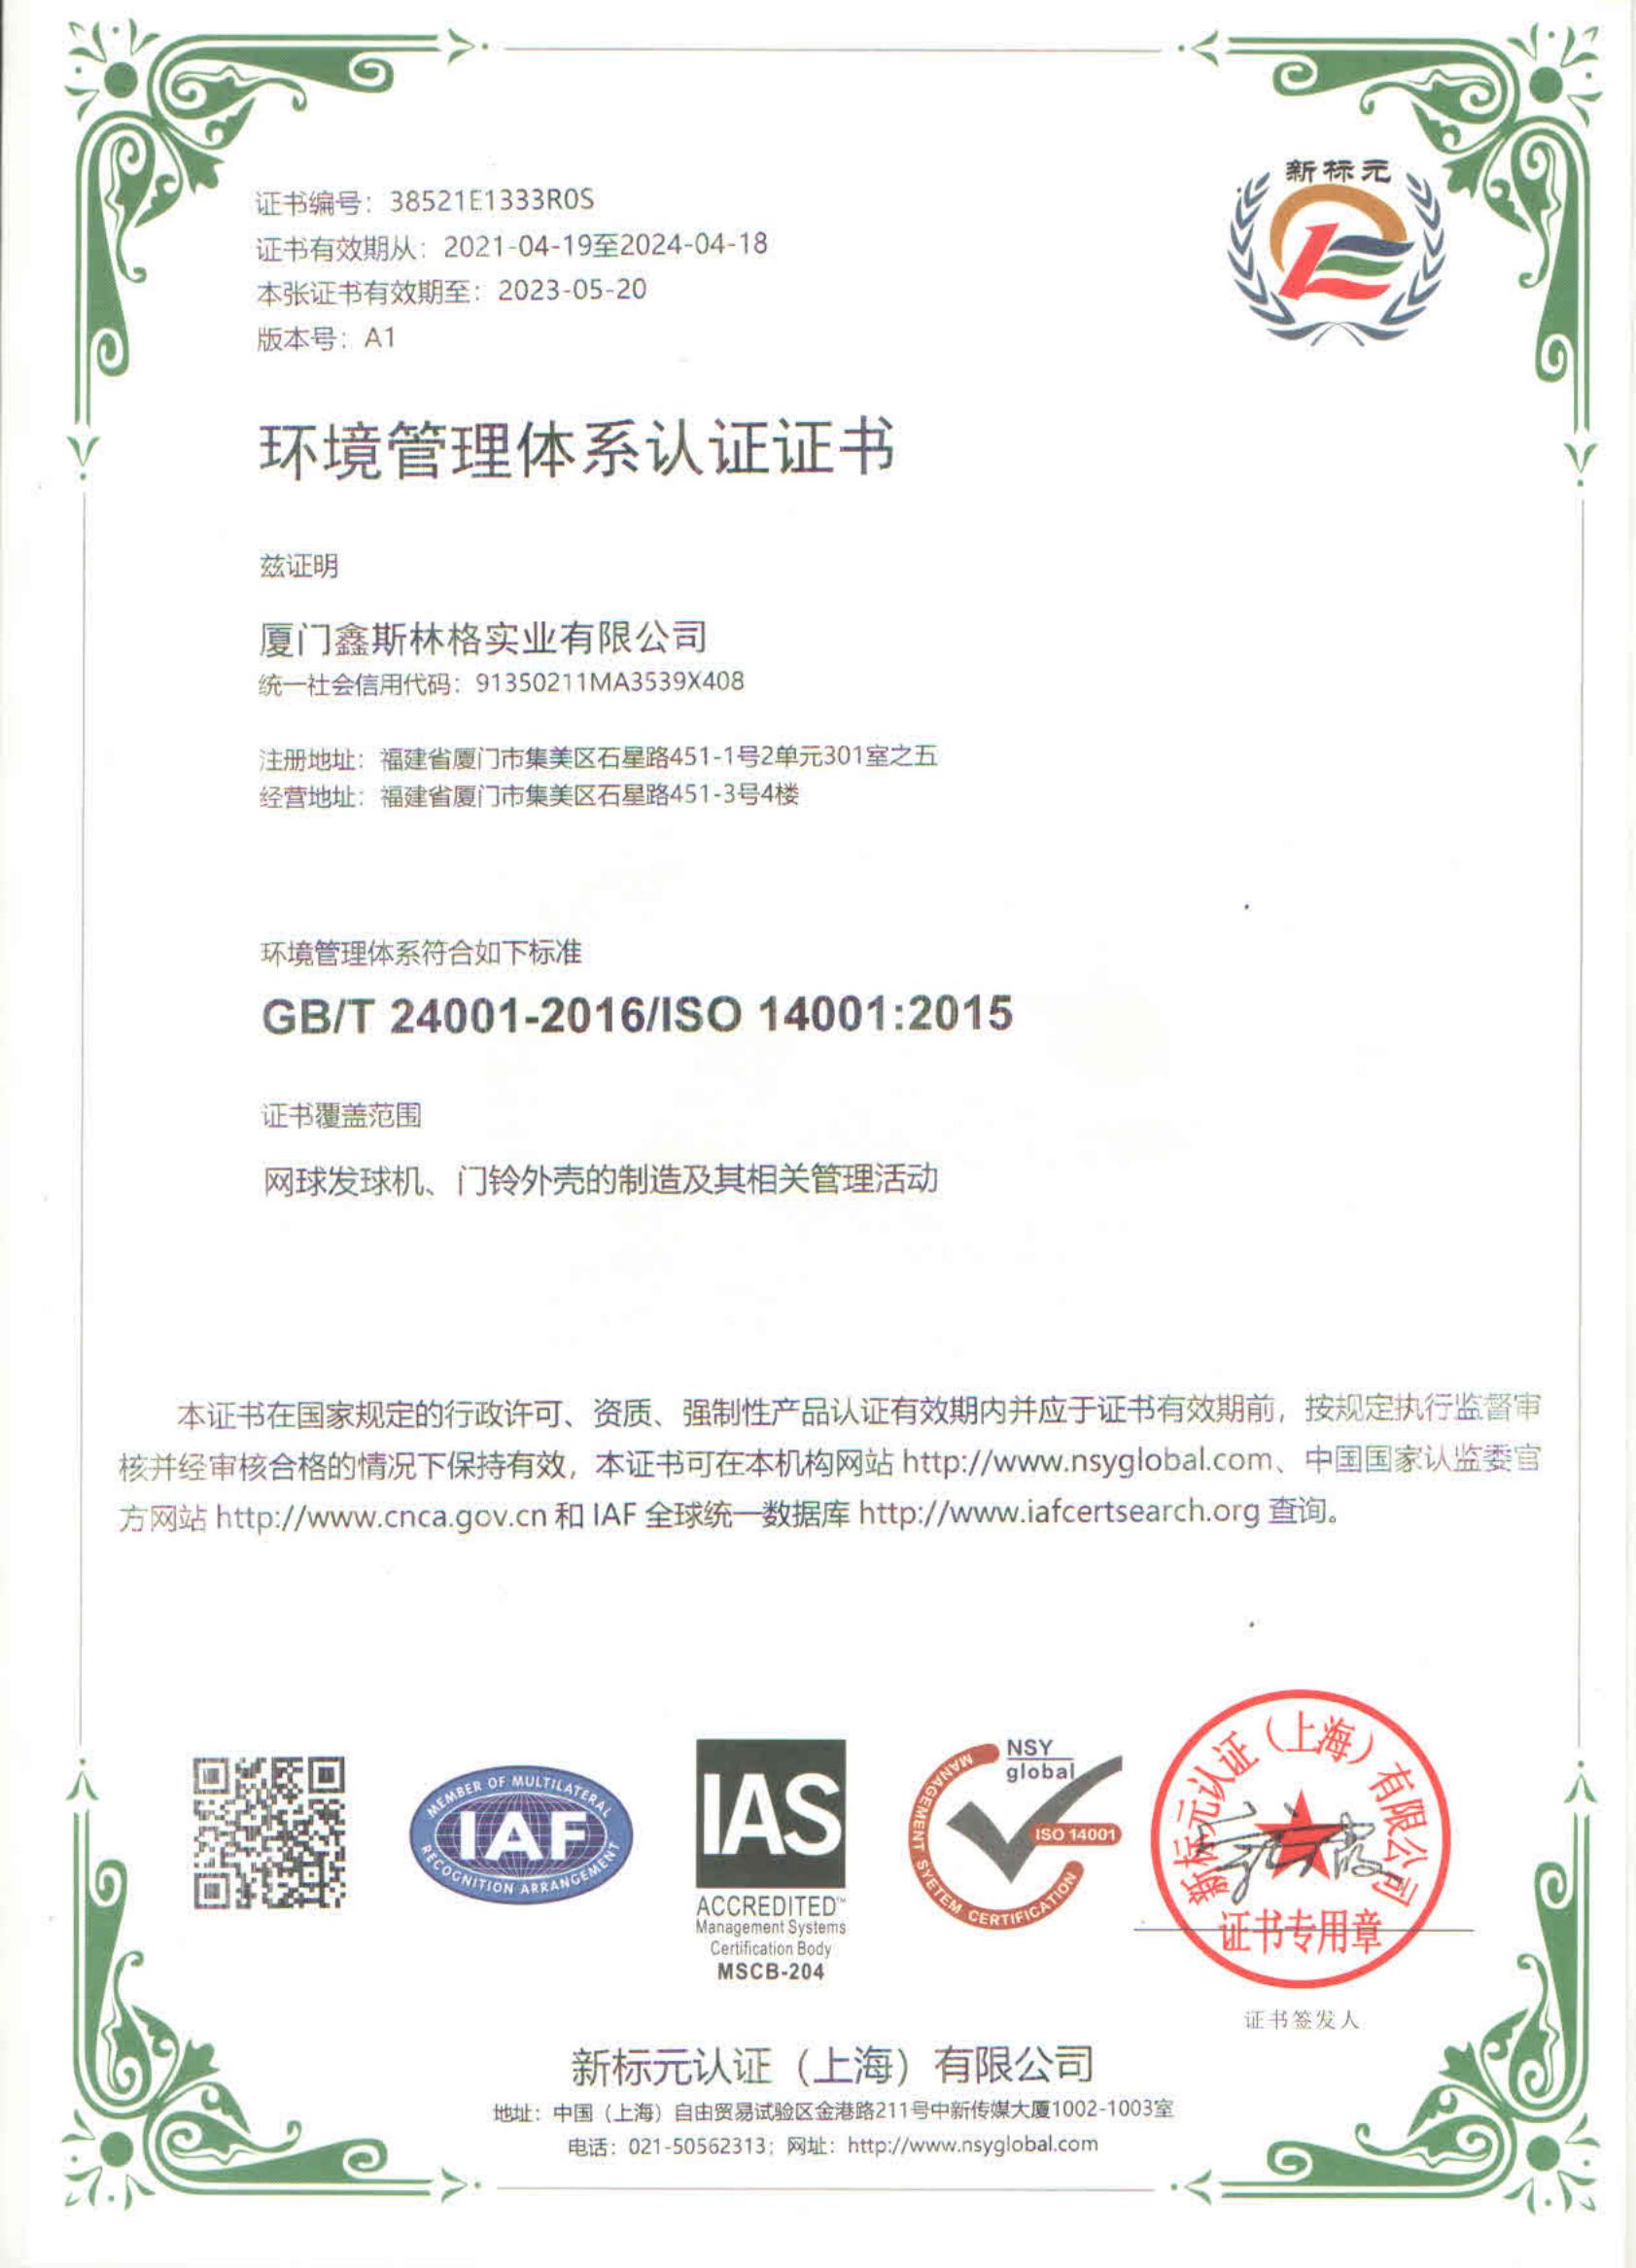 ISO 14001 ISO 14001 中英文_00